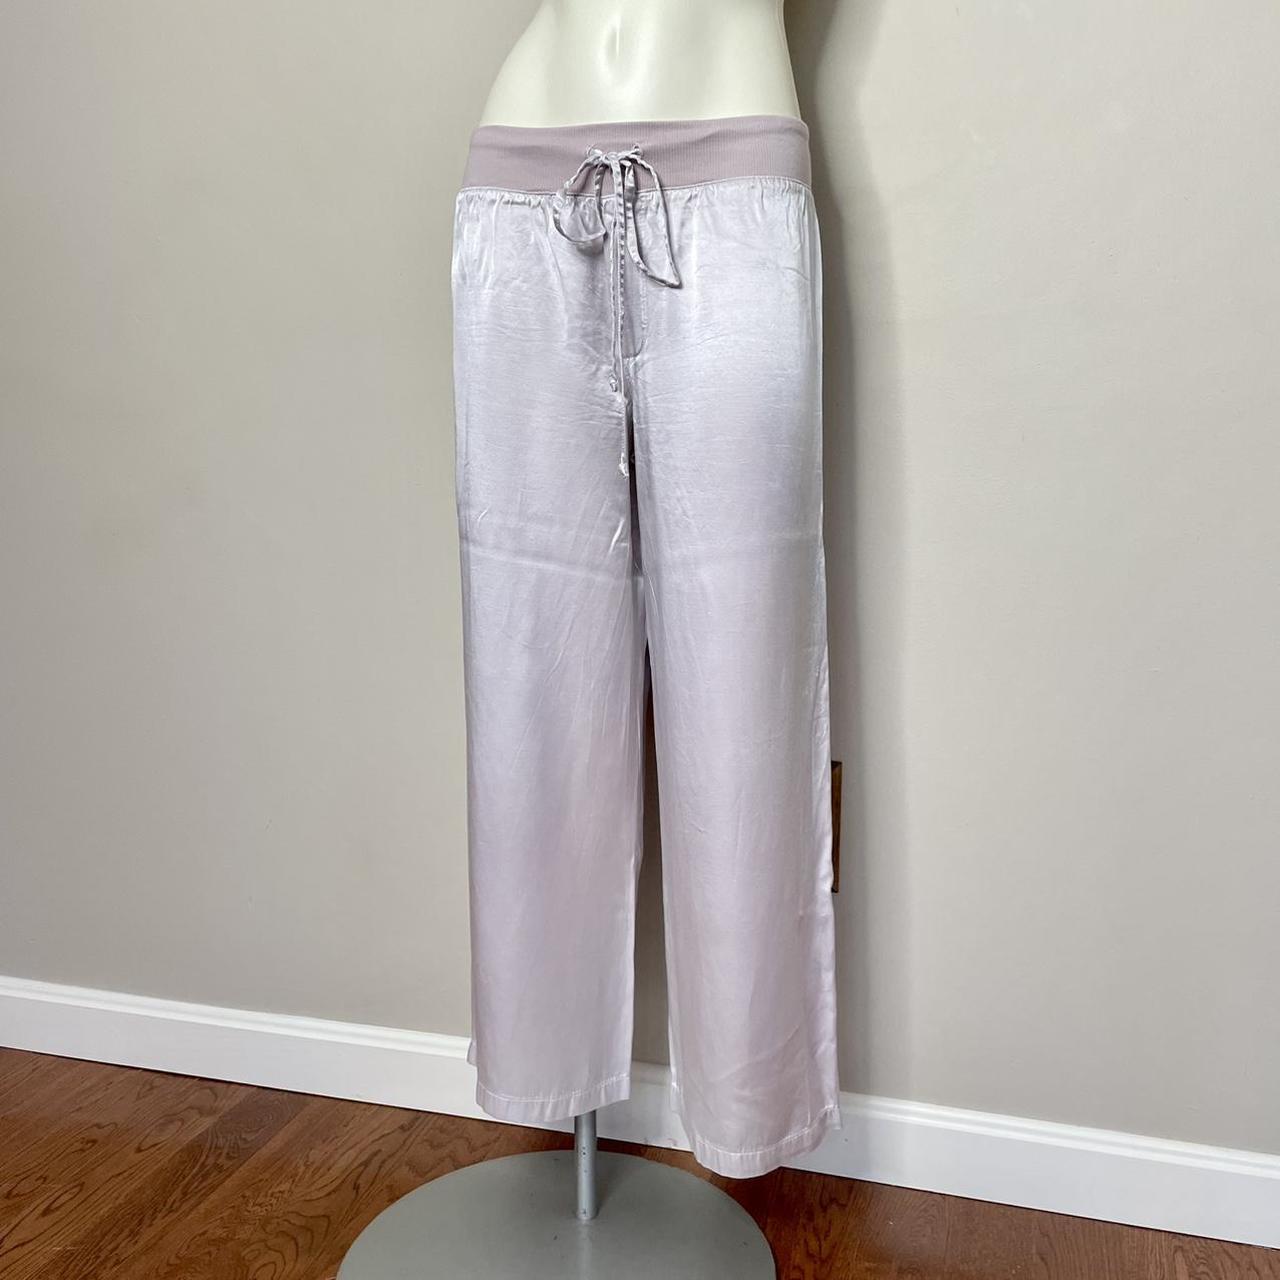 PJ Harlow Women's Pink Trousers (2)